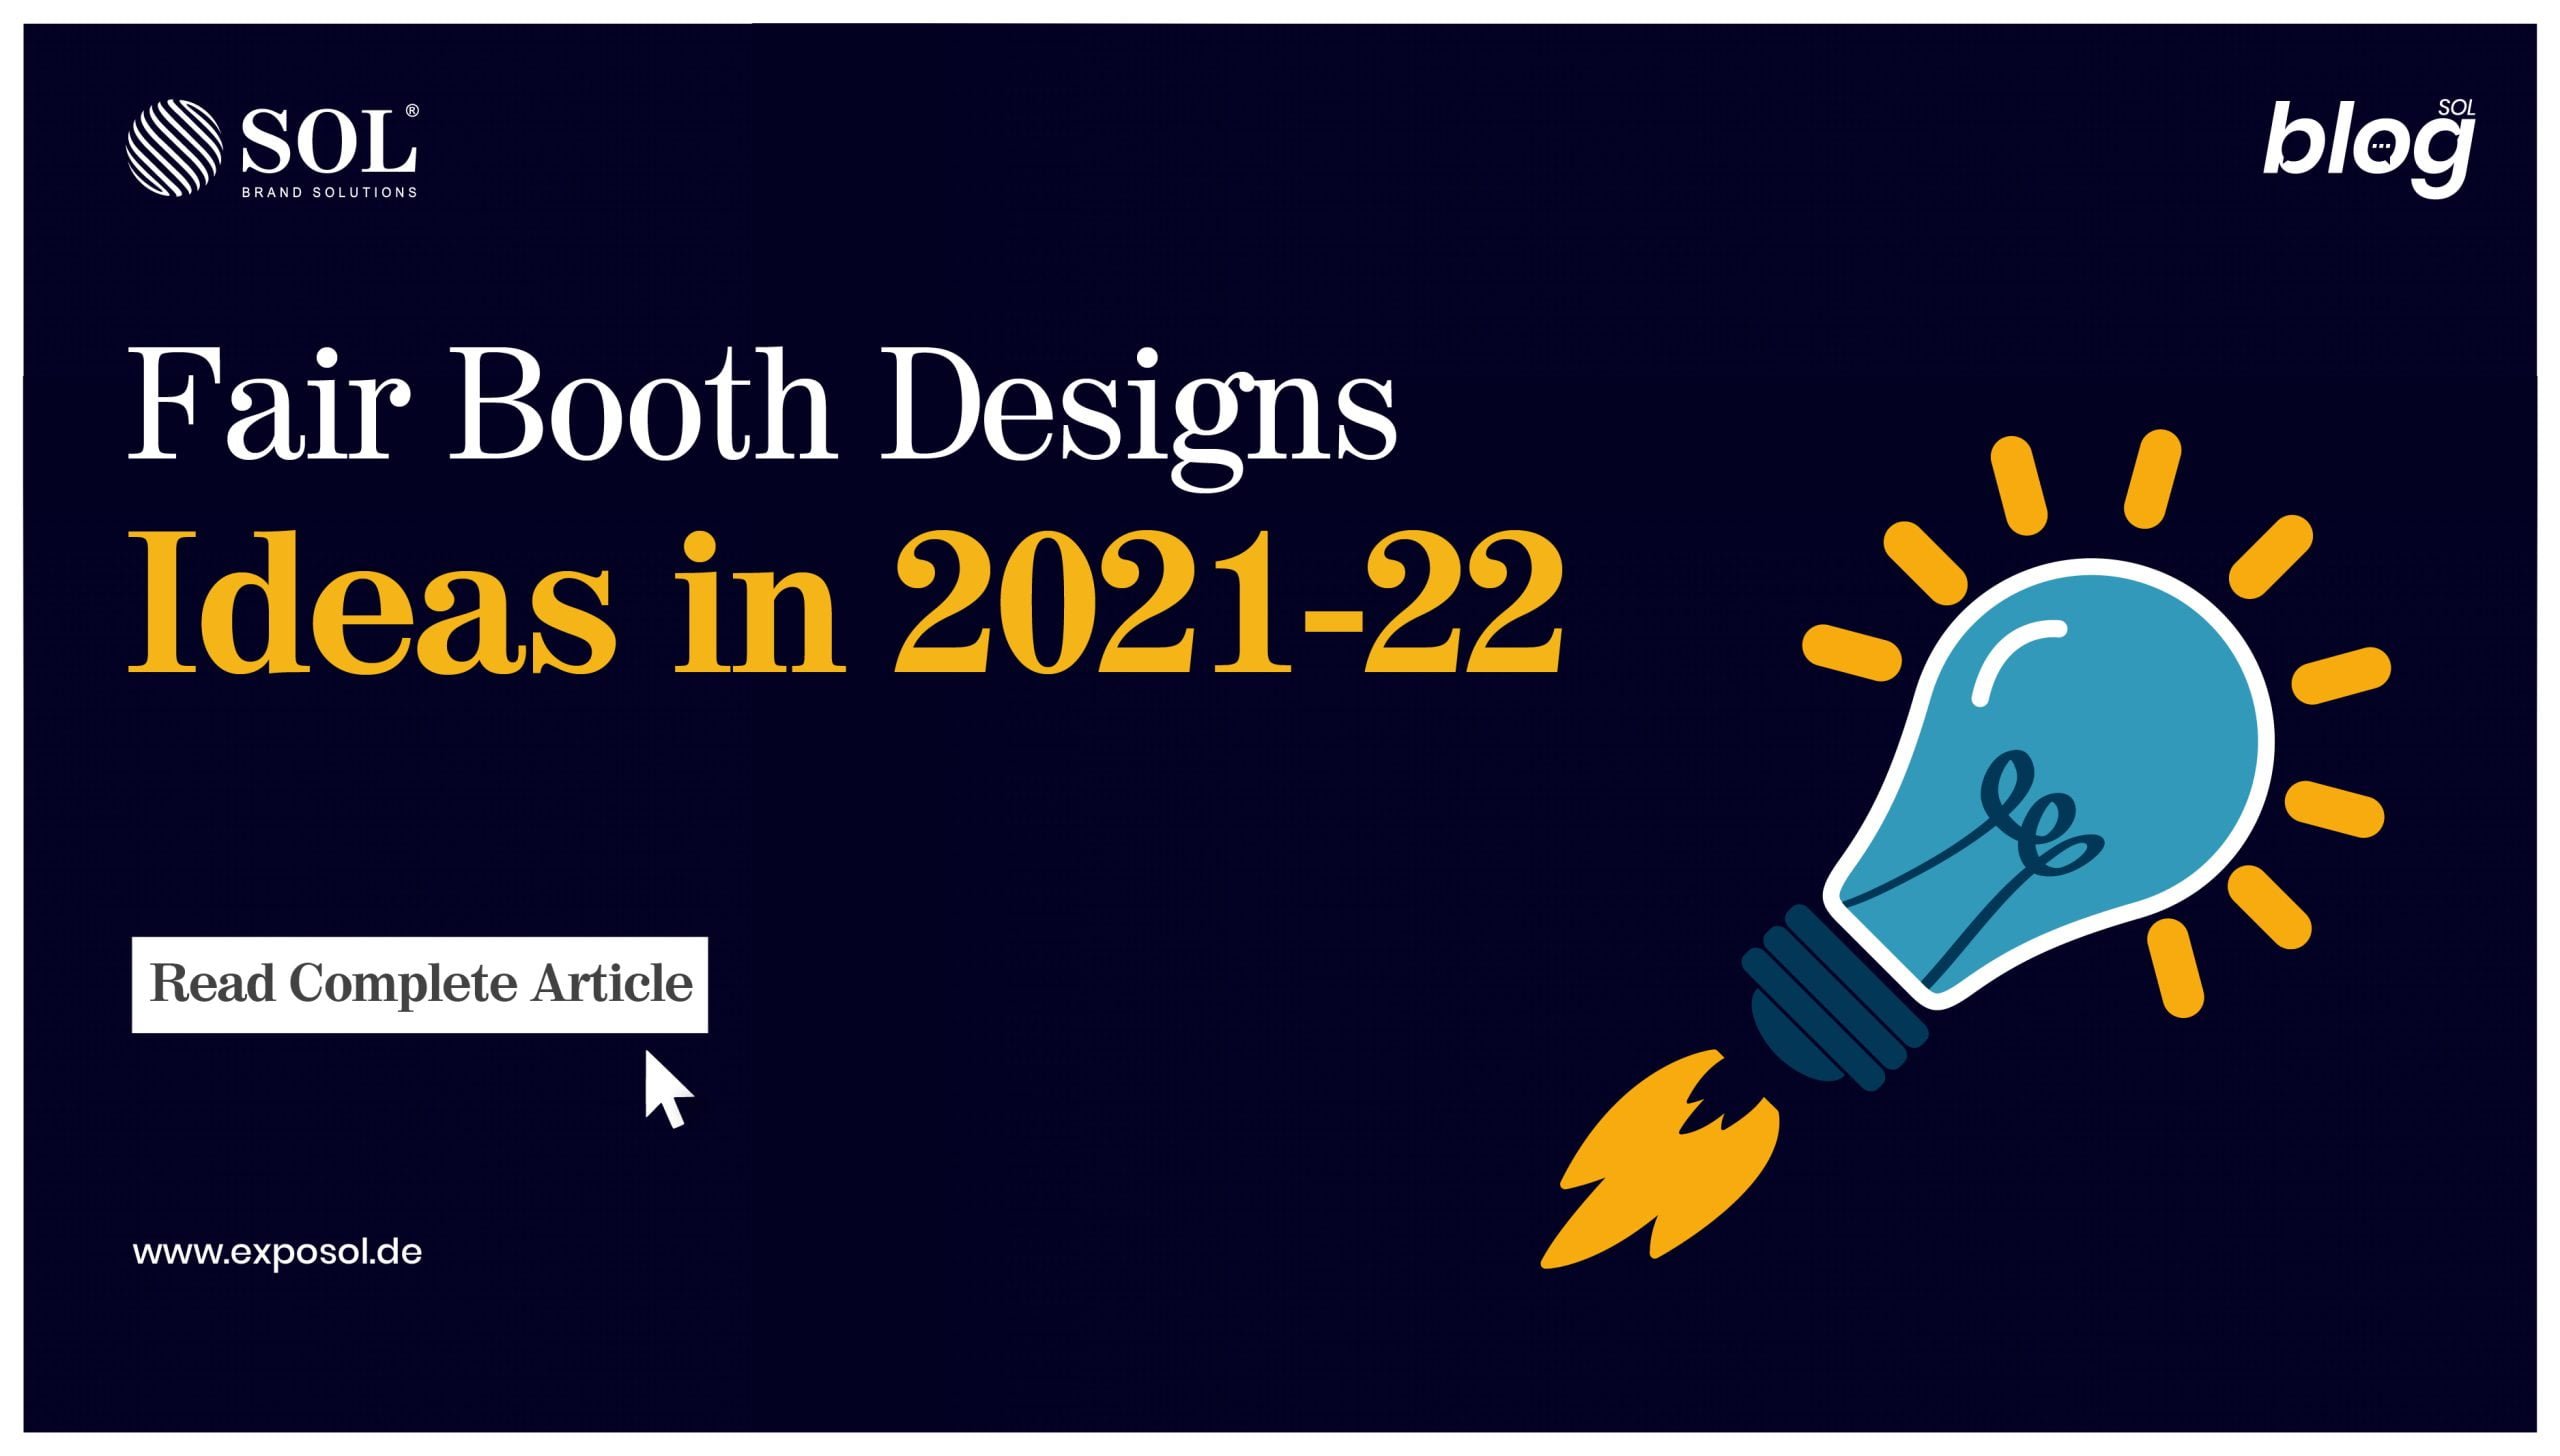 Fair Booth Designs Ideas in 2023-24